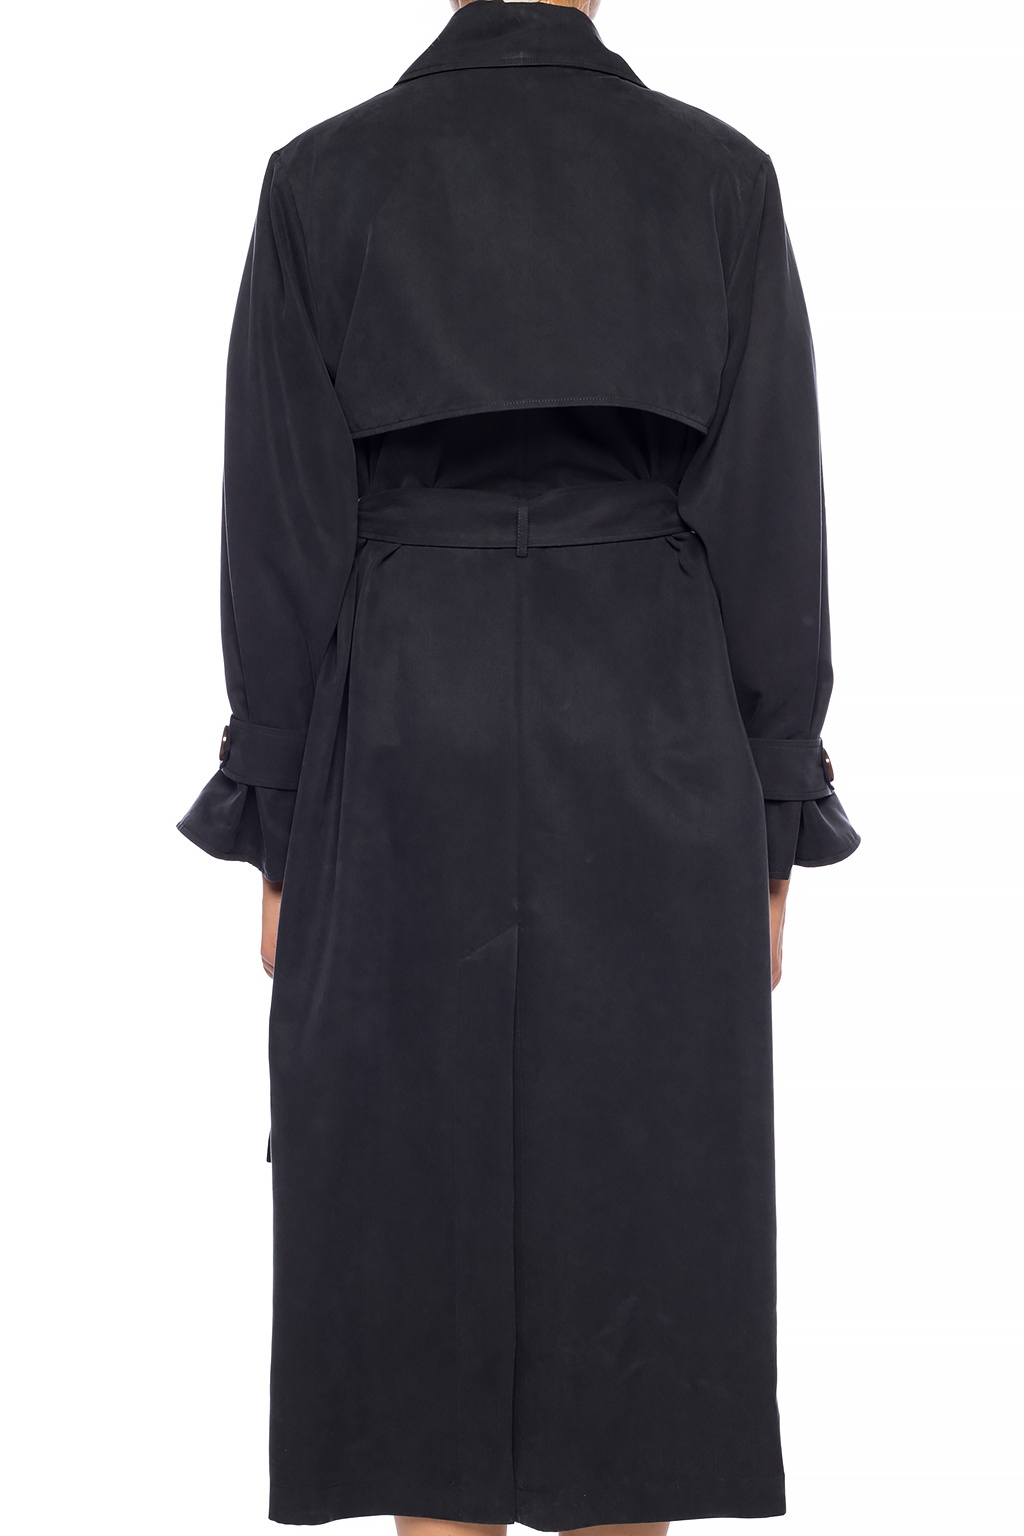 Louis Vuitton Belted Short Wrap Pea Coat - Vitkac shop online